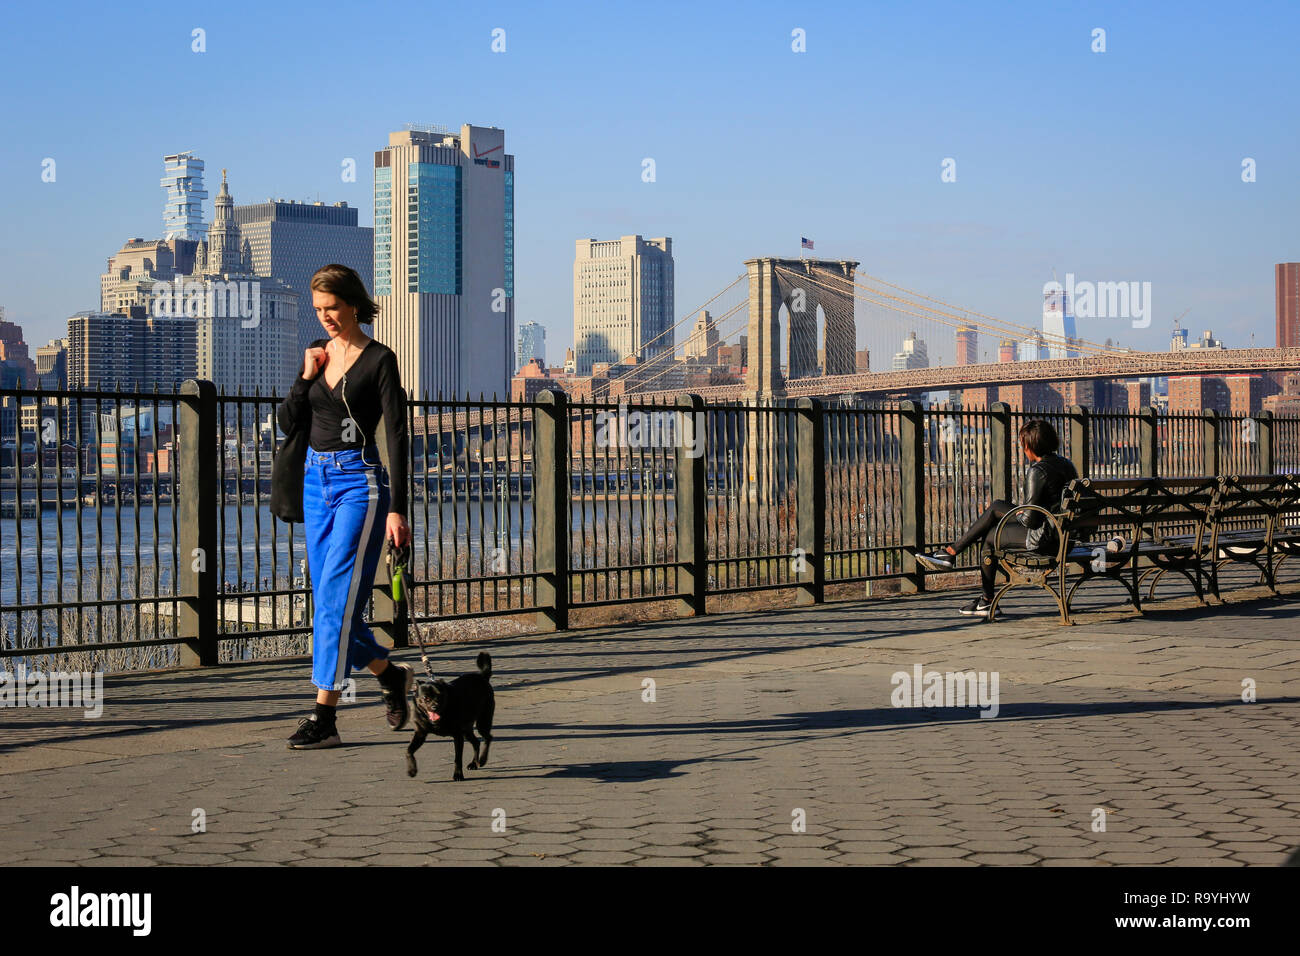 21.02.2018, New York City, New York, Vereinigte Staaten von Amerika - Menschen auf der Uferpromenade Brooklyn Heights, Blick Richtung Manhattan skylin Stock Photo